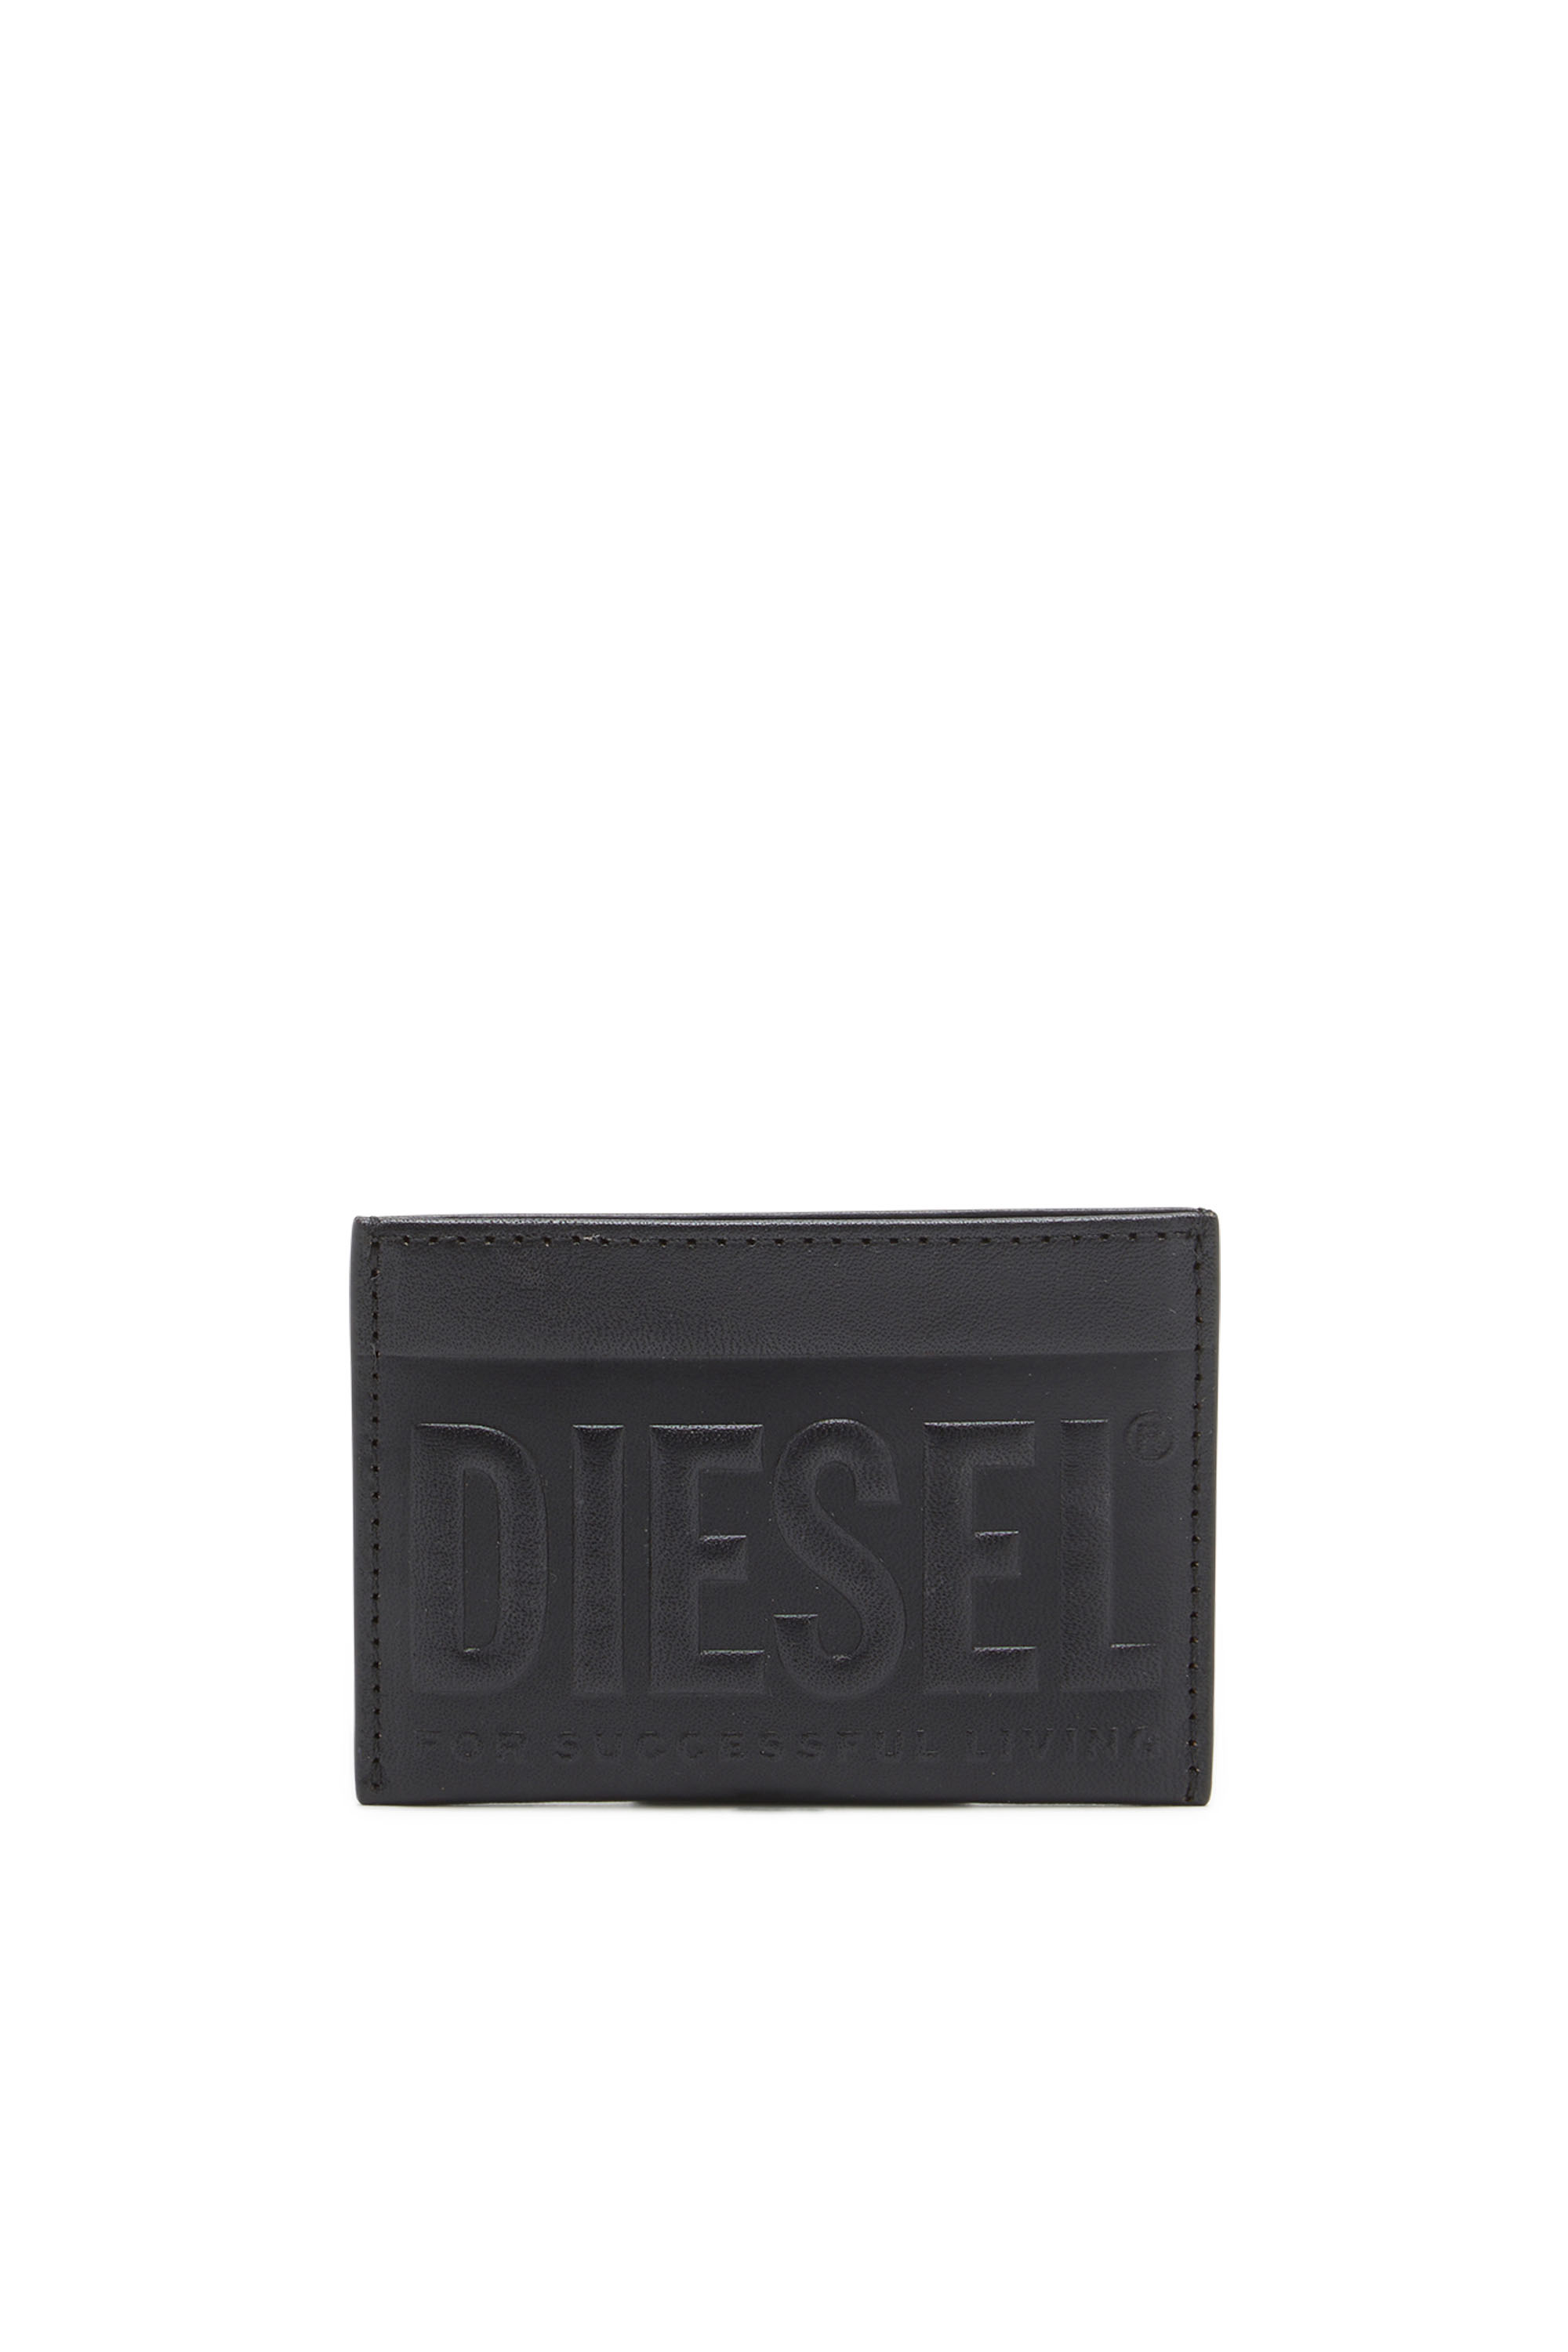 Diesel - Porte-cartes en cuir avec logo embossé - Petits Portefeuilles - Homme - Noir